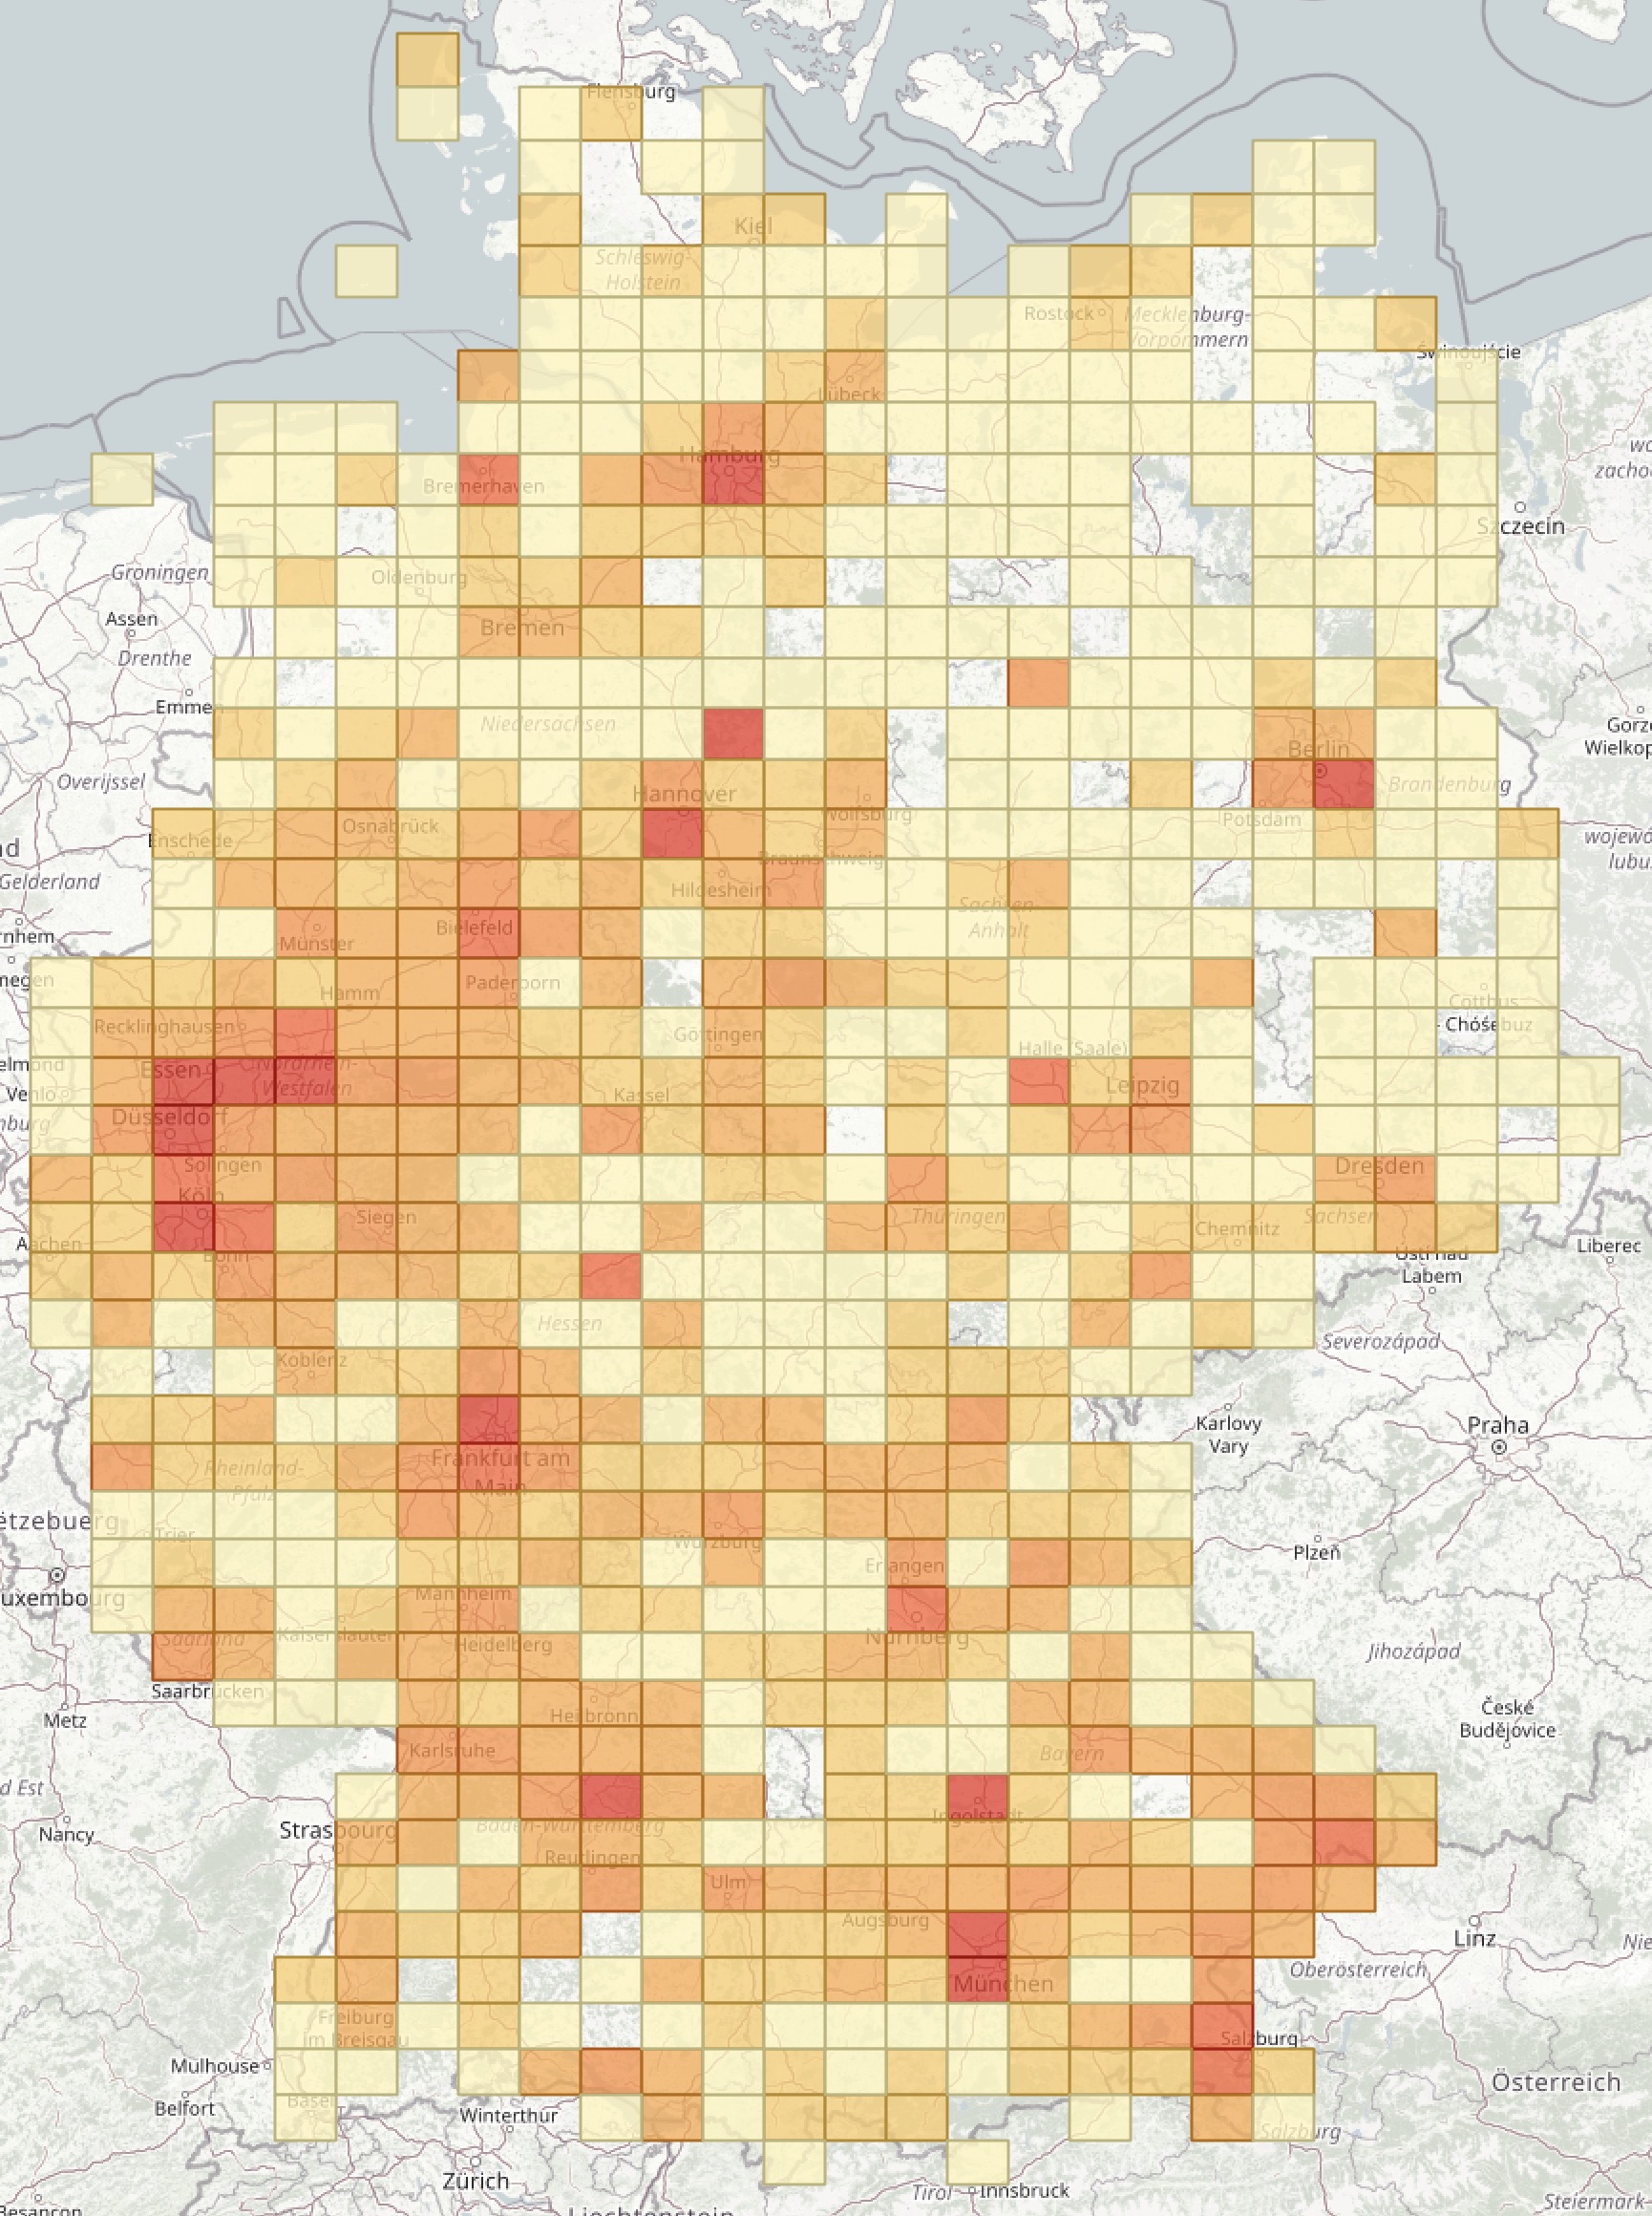 sample distribution image